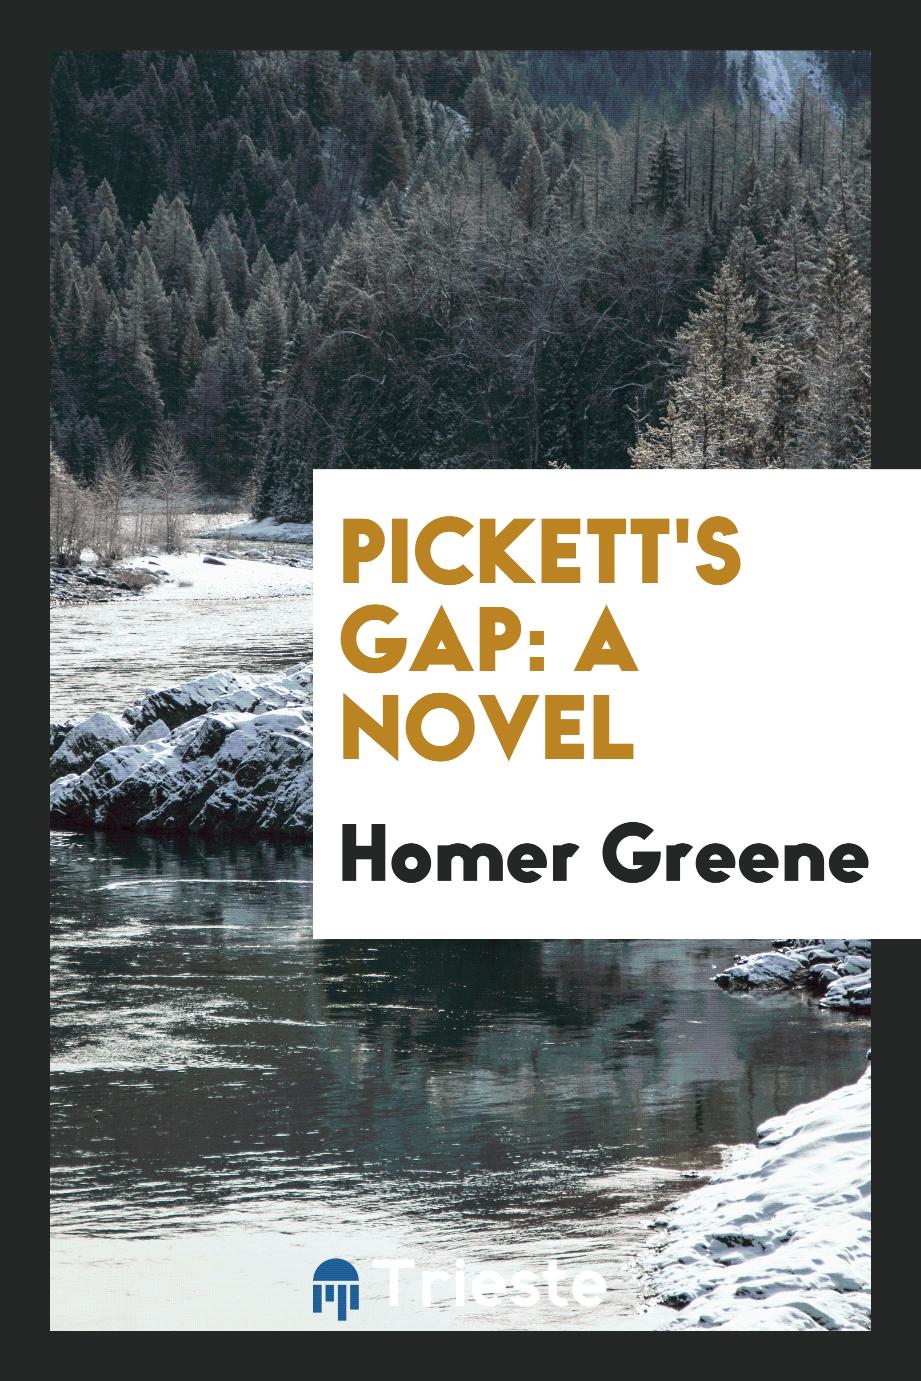 Pickett's Gap: a novel